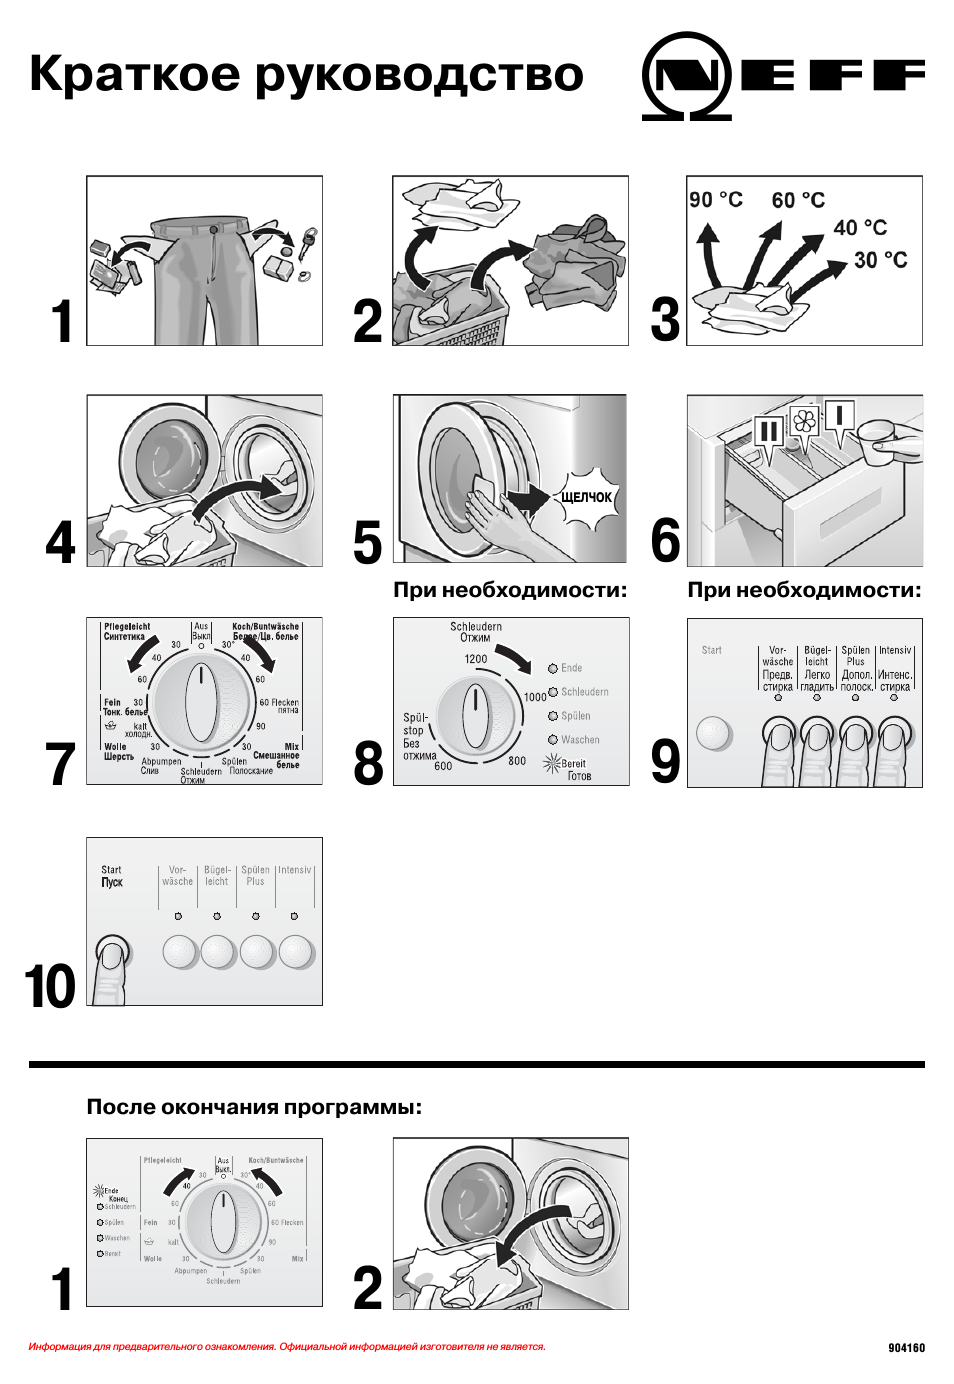 Как пользоваться стиральной машиной candy: первый запуск стиралки канди, подготовка белья, инструкция по использованию и уходу за бытовым прибором